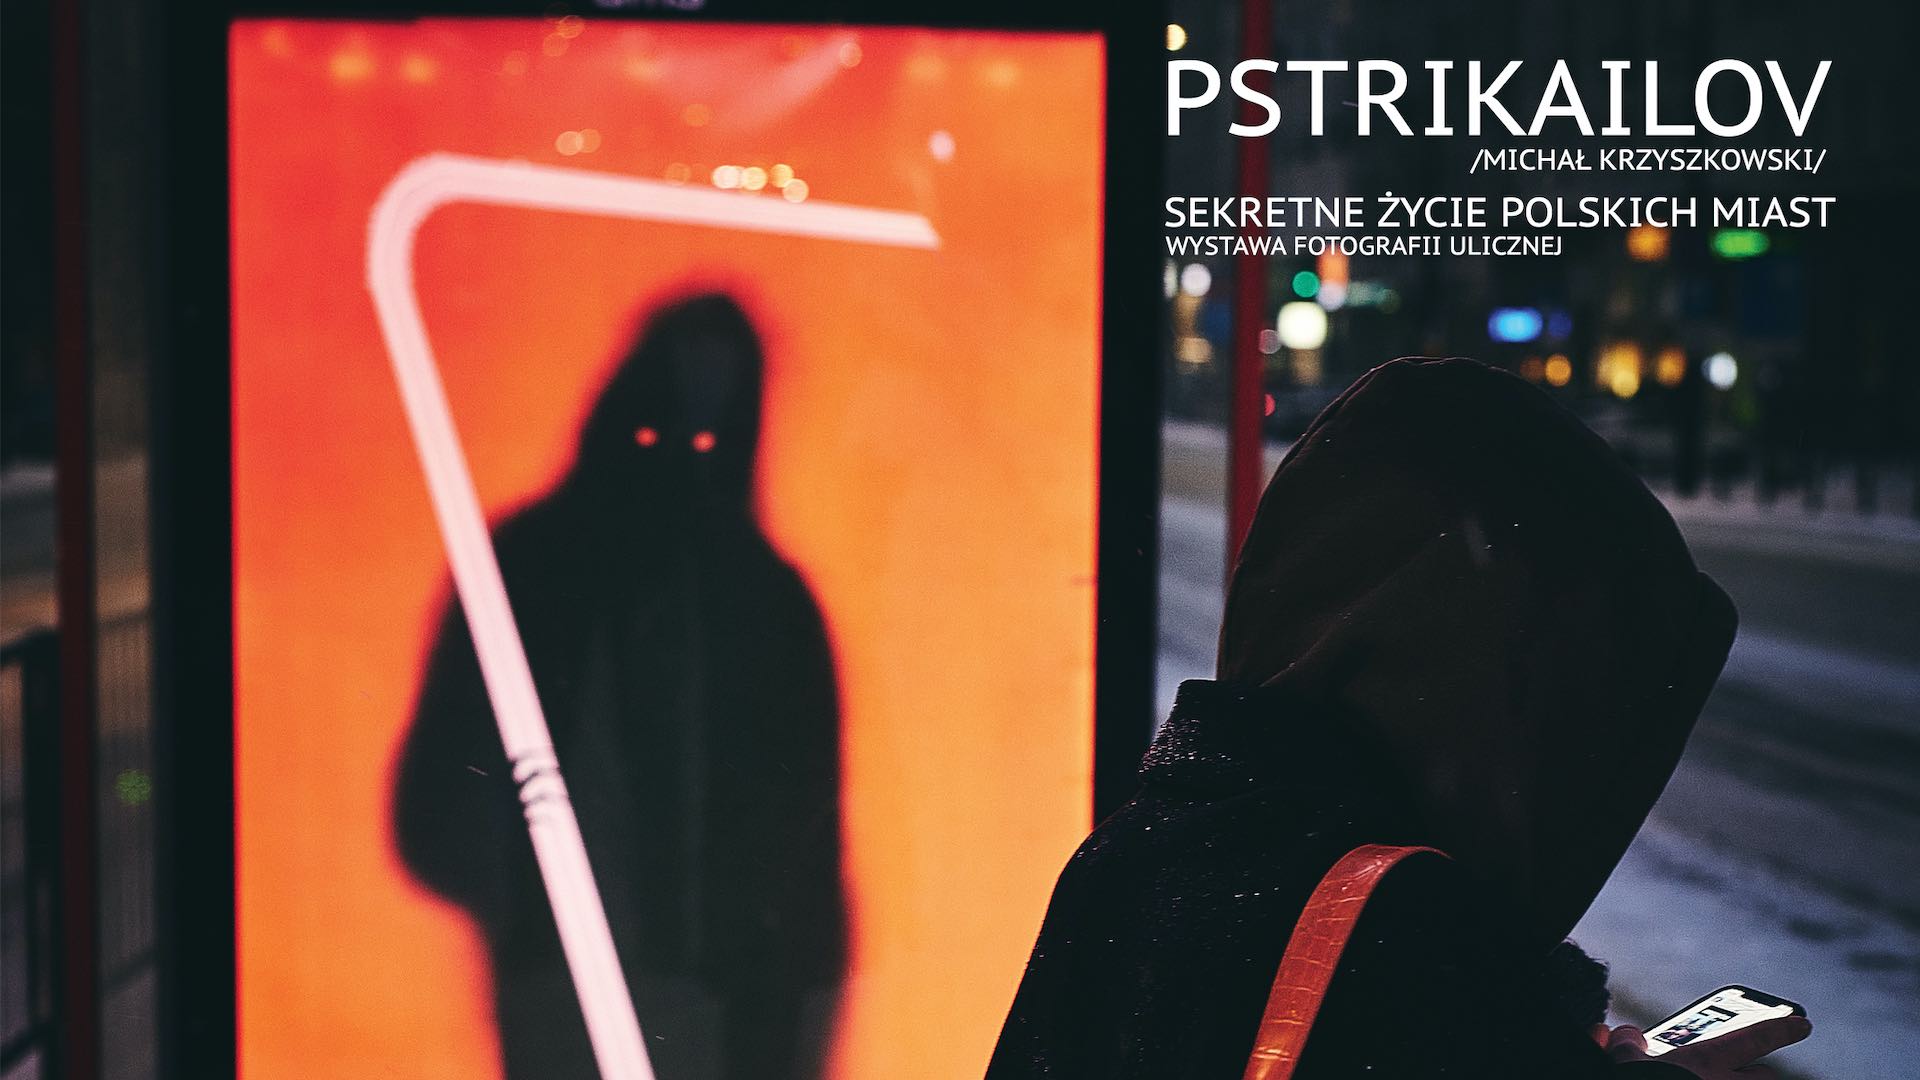 Pstrikailov Michał Krzyszkowski Wystawa fotografii ulicznej Sekretne życie polskich miast